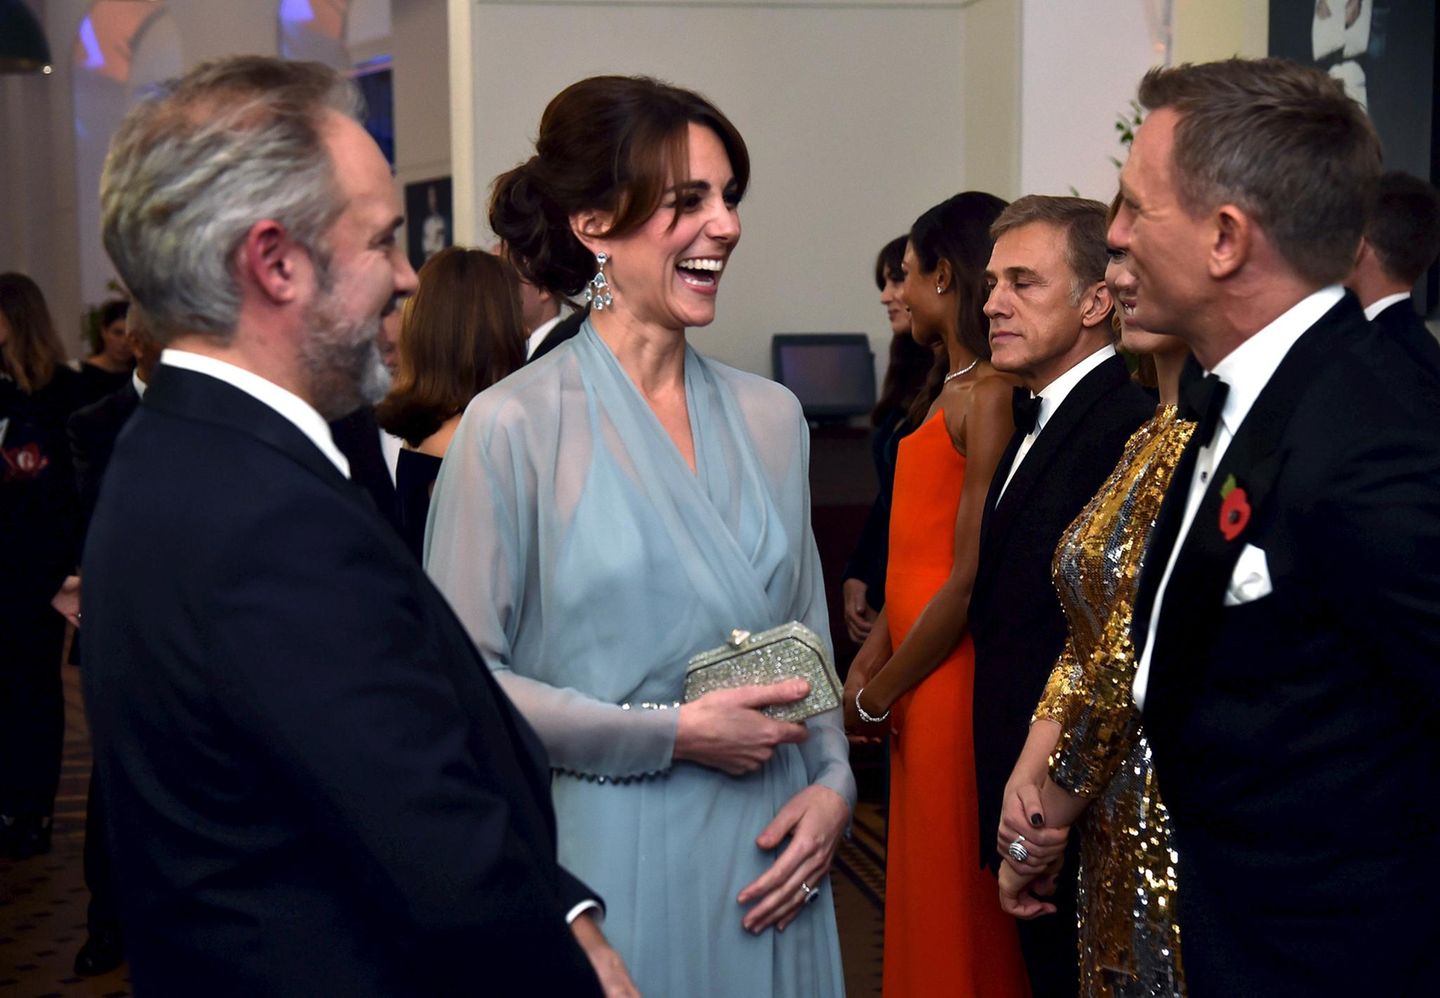 Herzogin Catherine begrüßt "James Bond"-Darsteller Daniel Craig vor der Premiere persönlich.